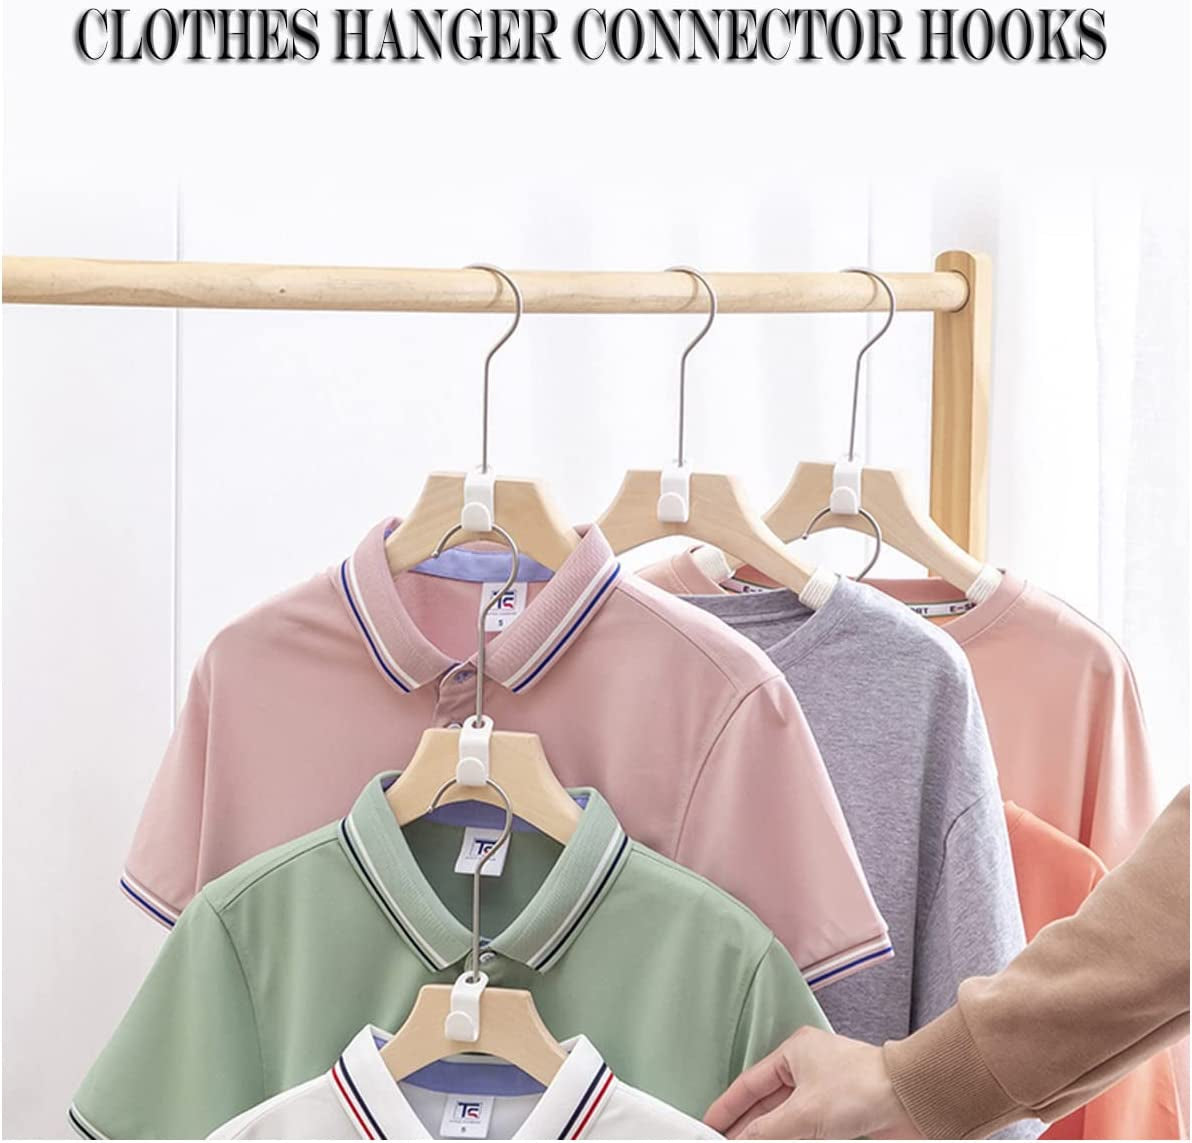 50PCS Clothes Hanger Connector Hooks